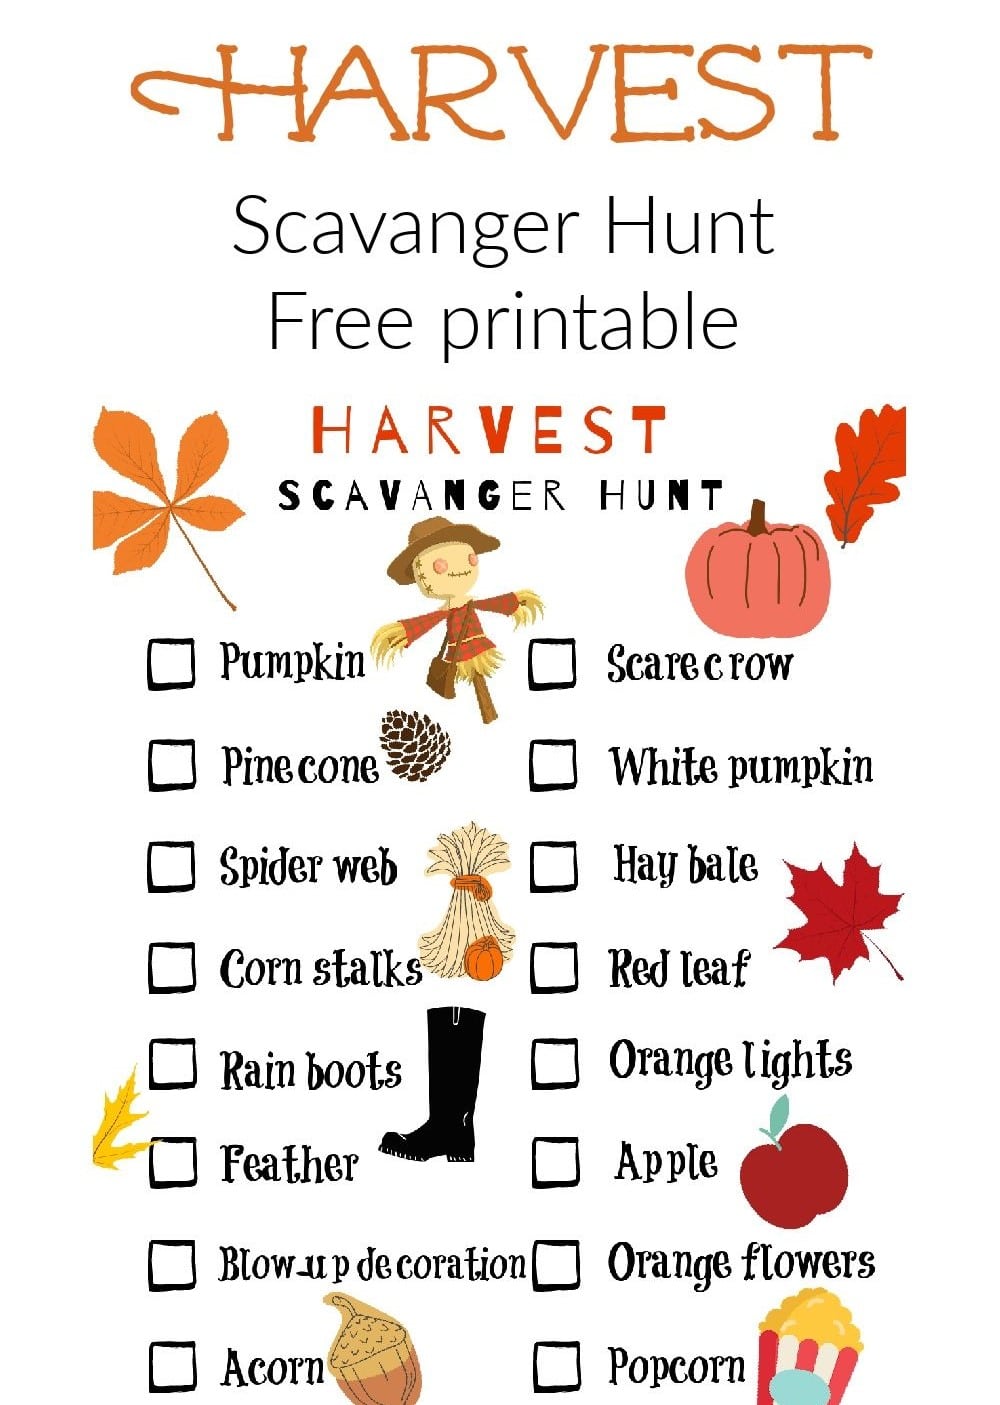 Harvest Festival Scavenger Hunt list